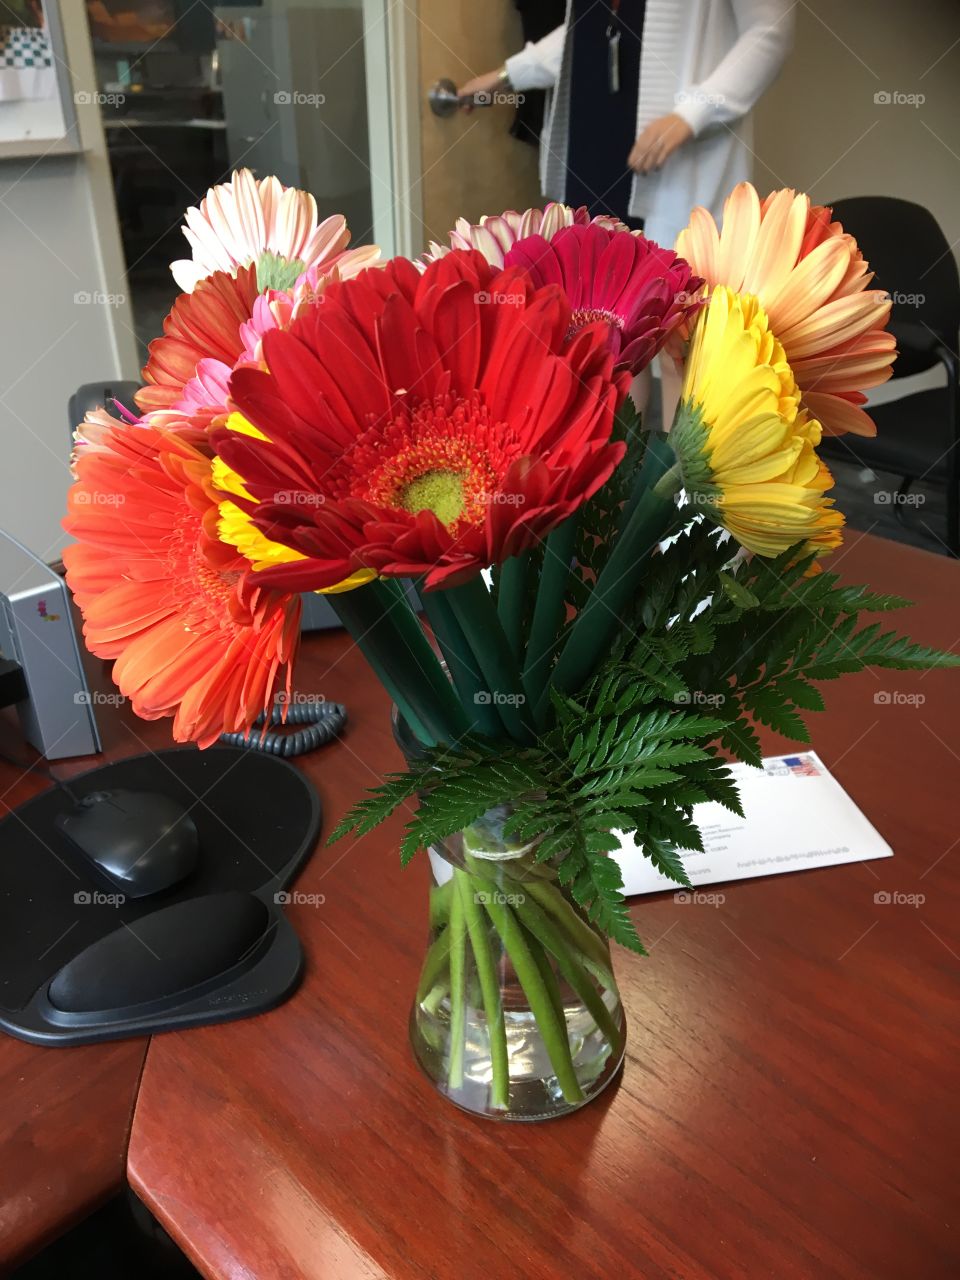 Office flower arrangement on desk. Brilliant colors